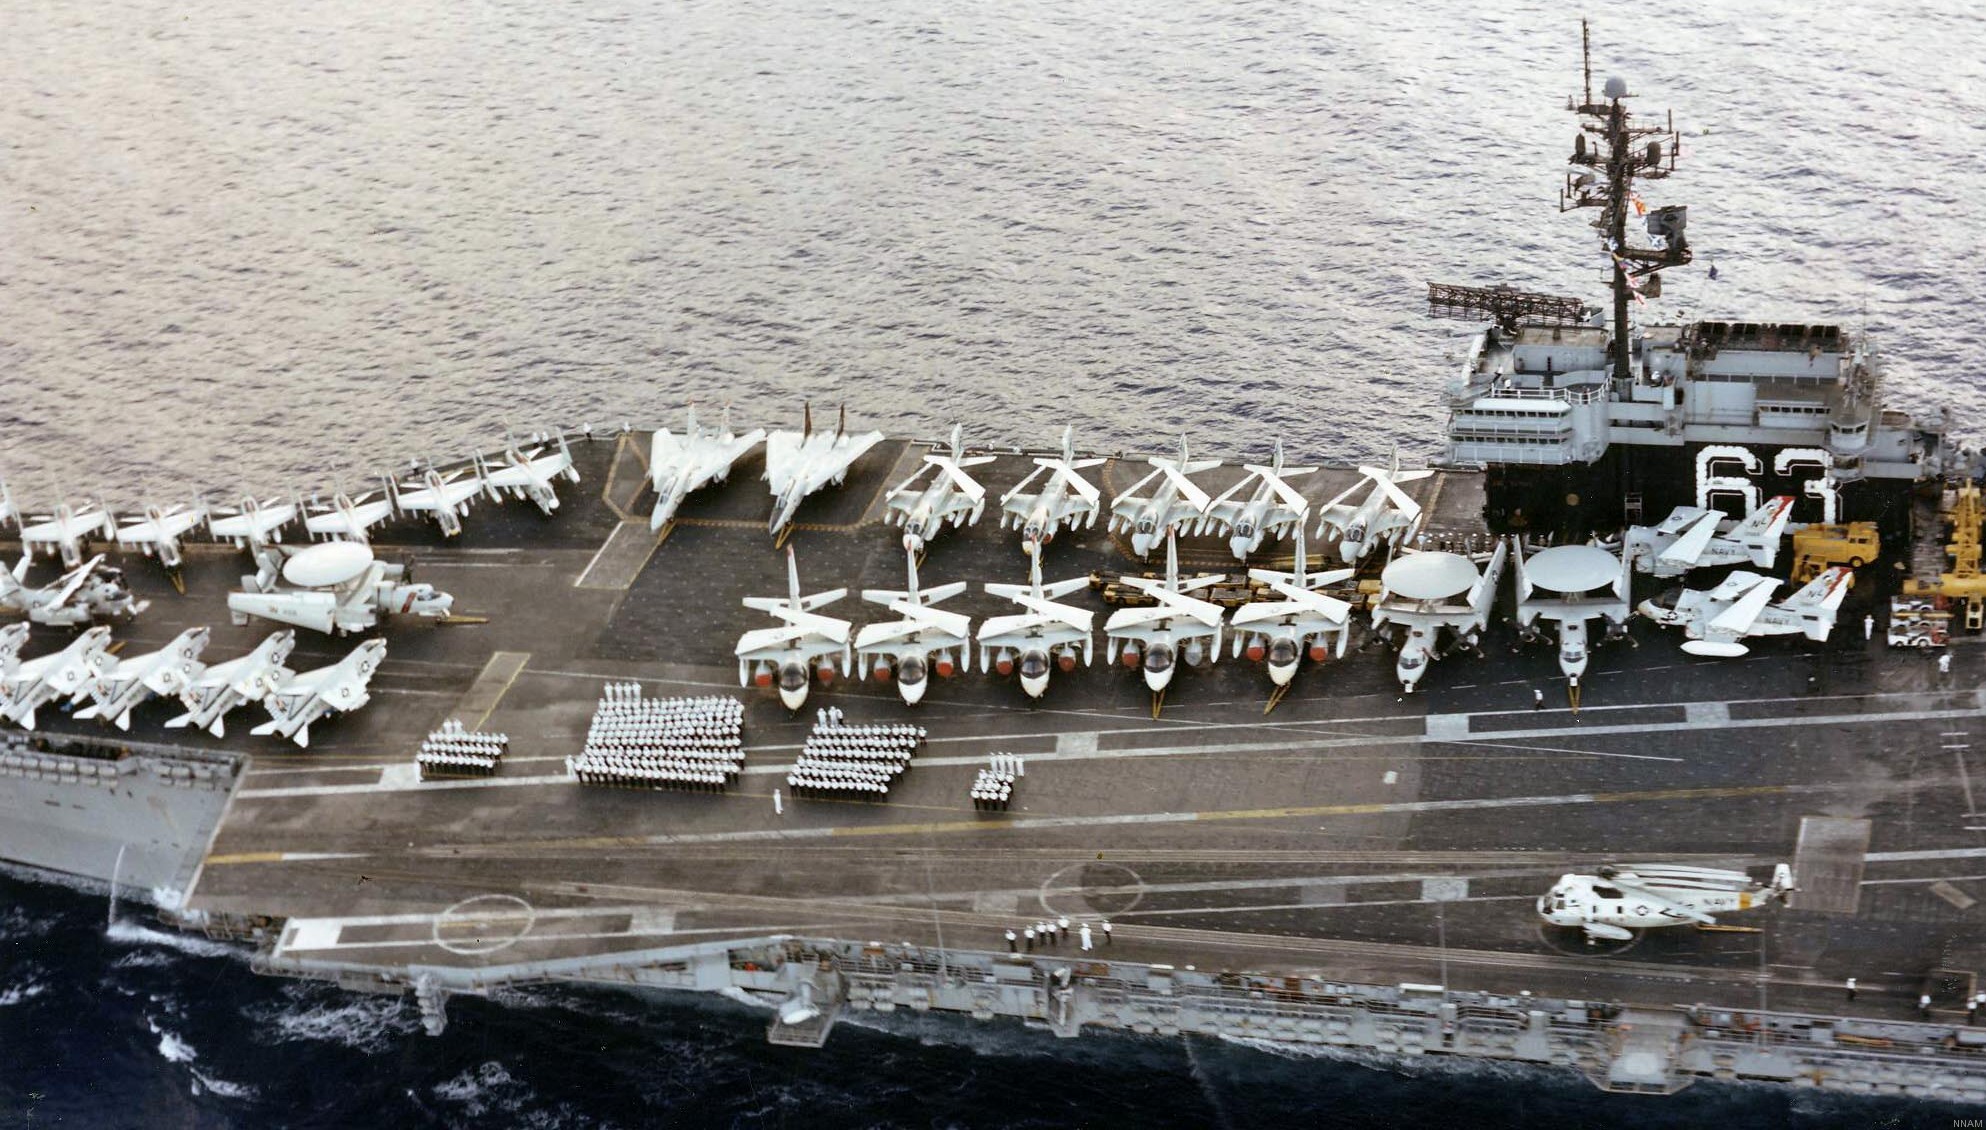 cv-63 uss kitty hawk aircraft carrier air wing cvw-15 us navy 247